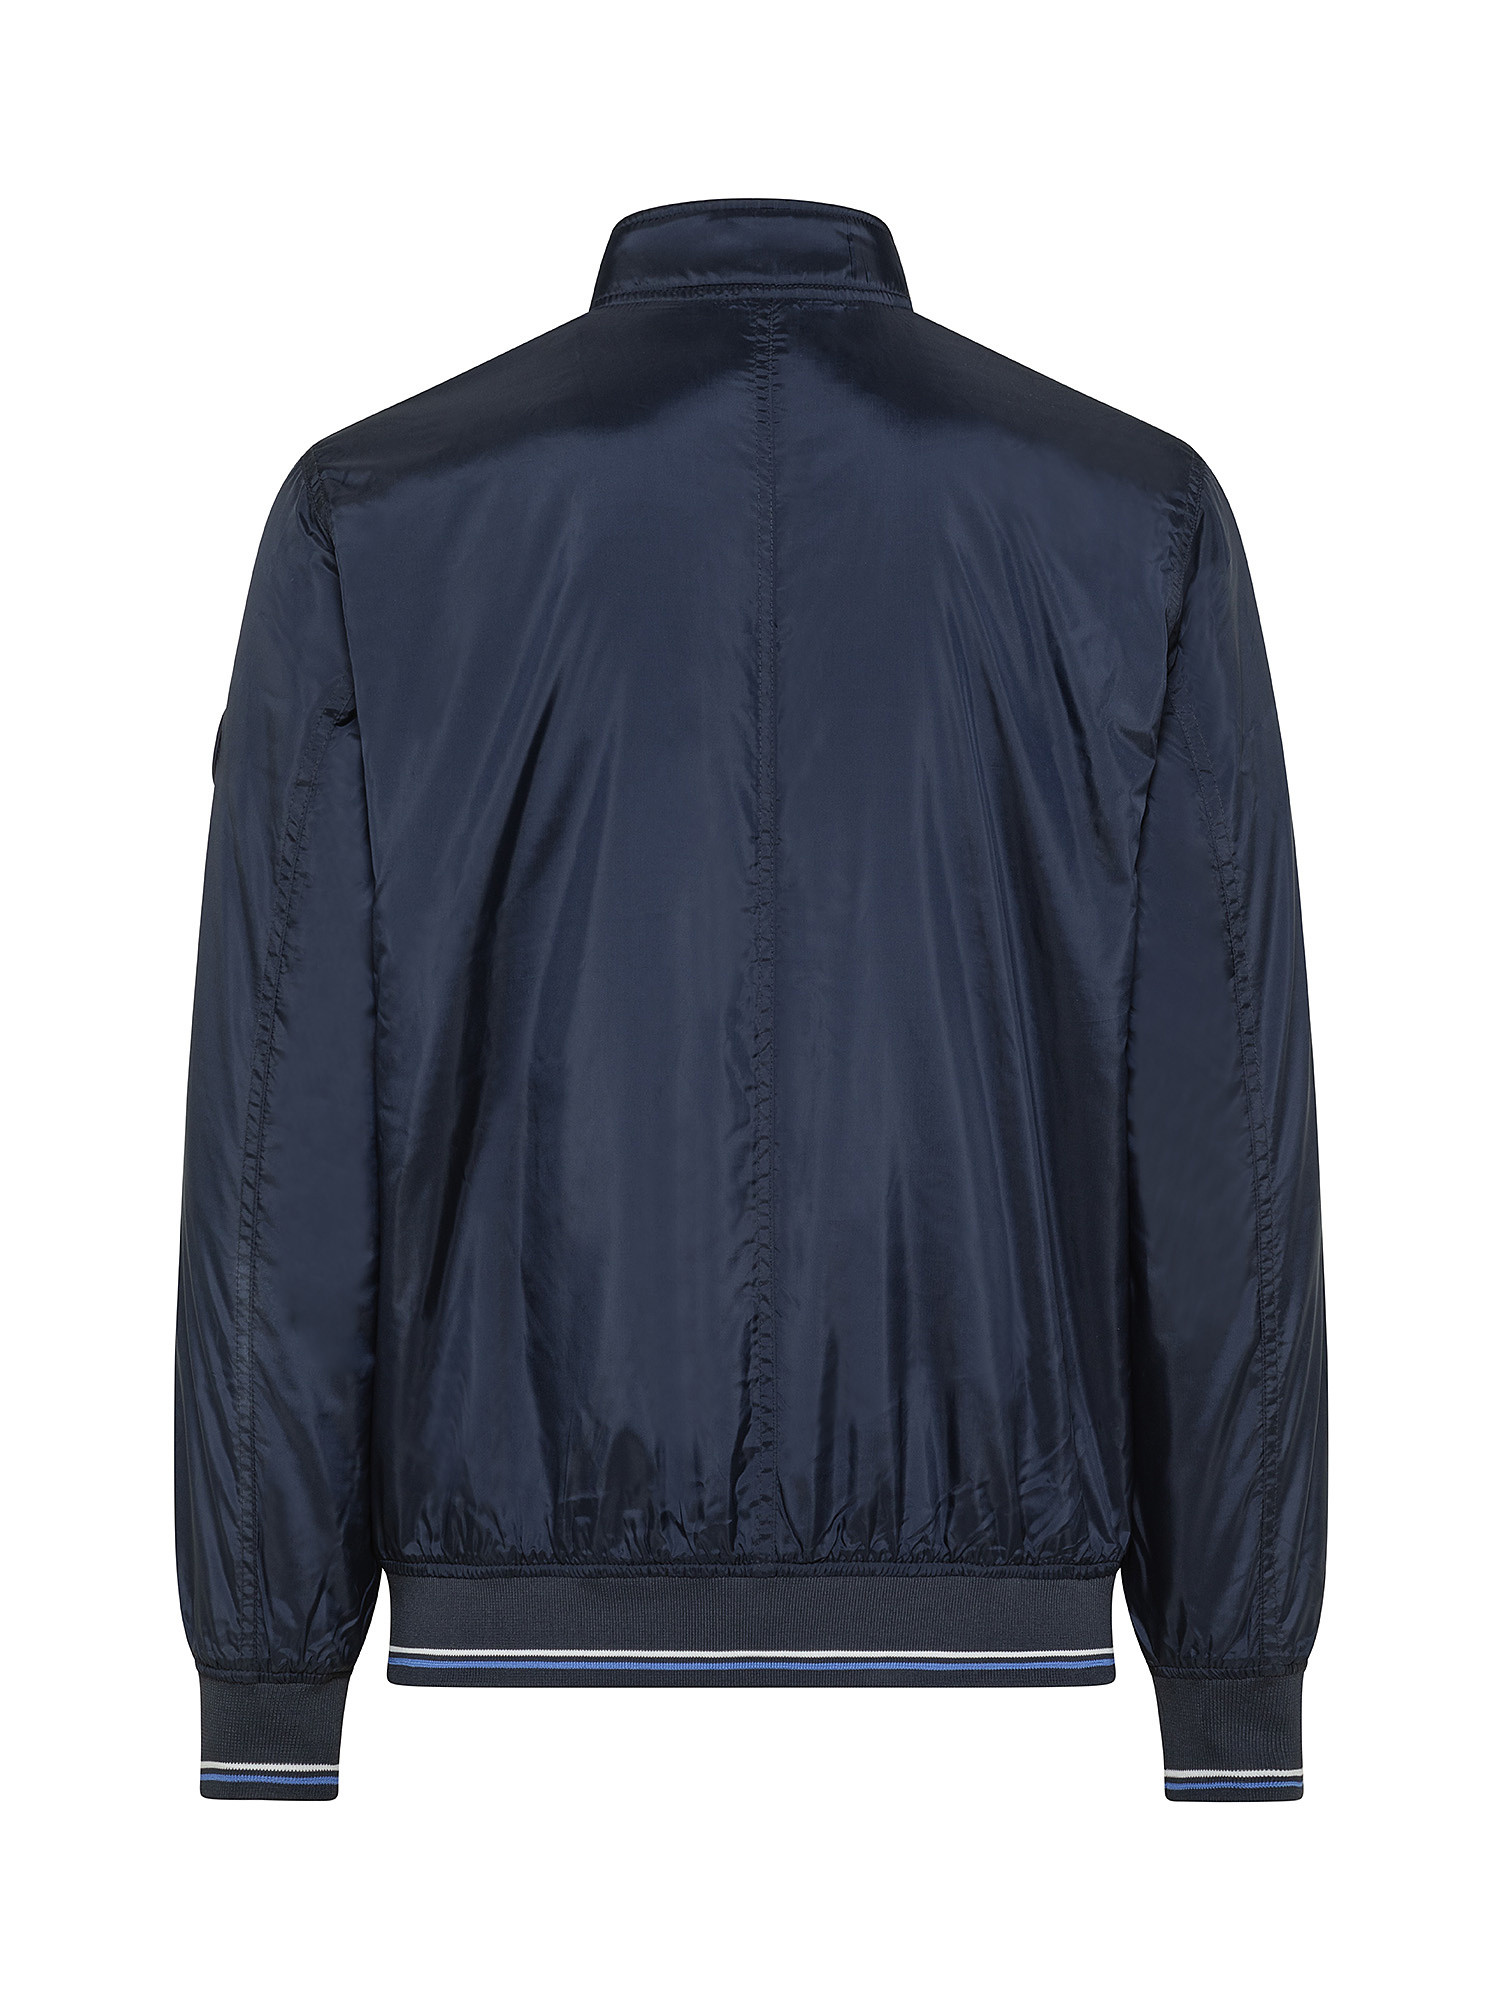 Jake back zip jacket, Dark Blue, large image number 1